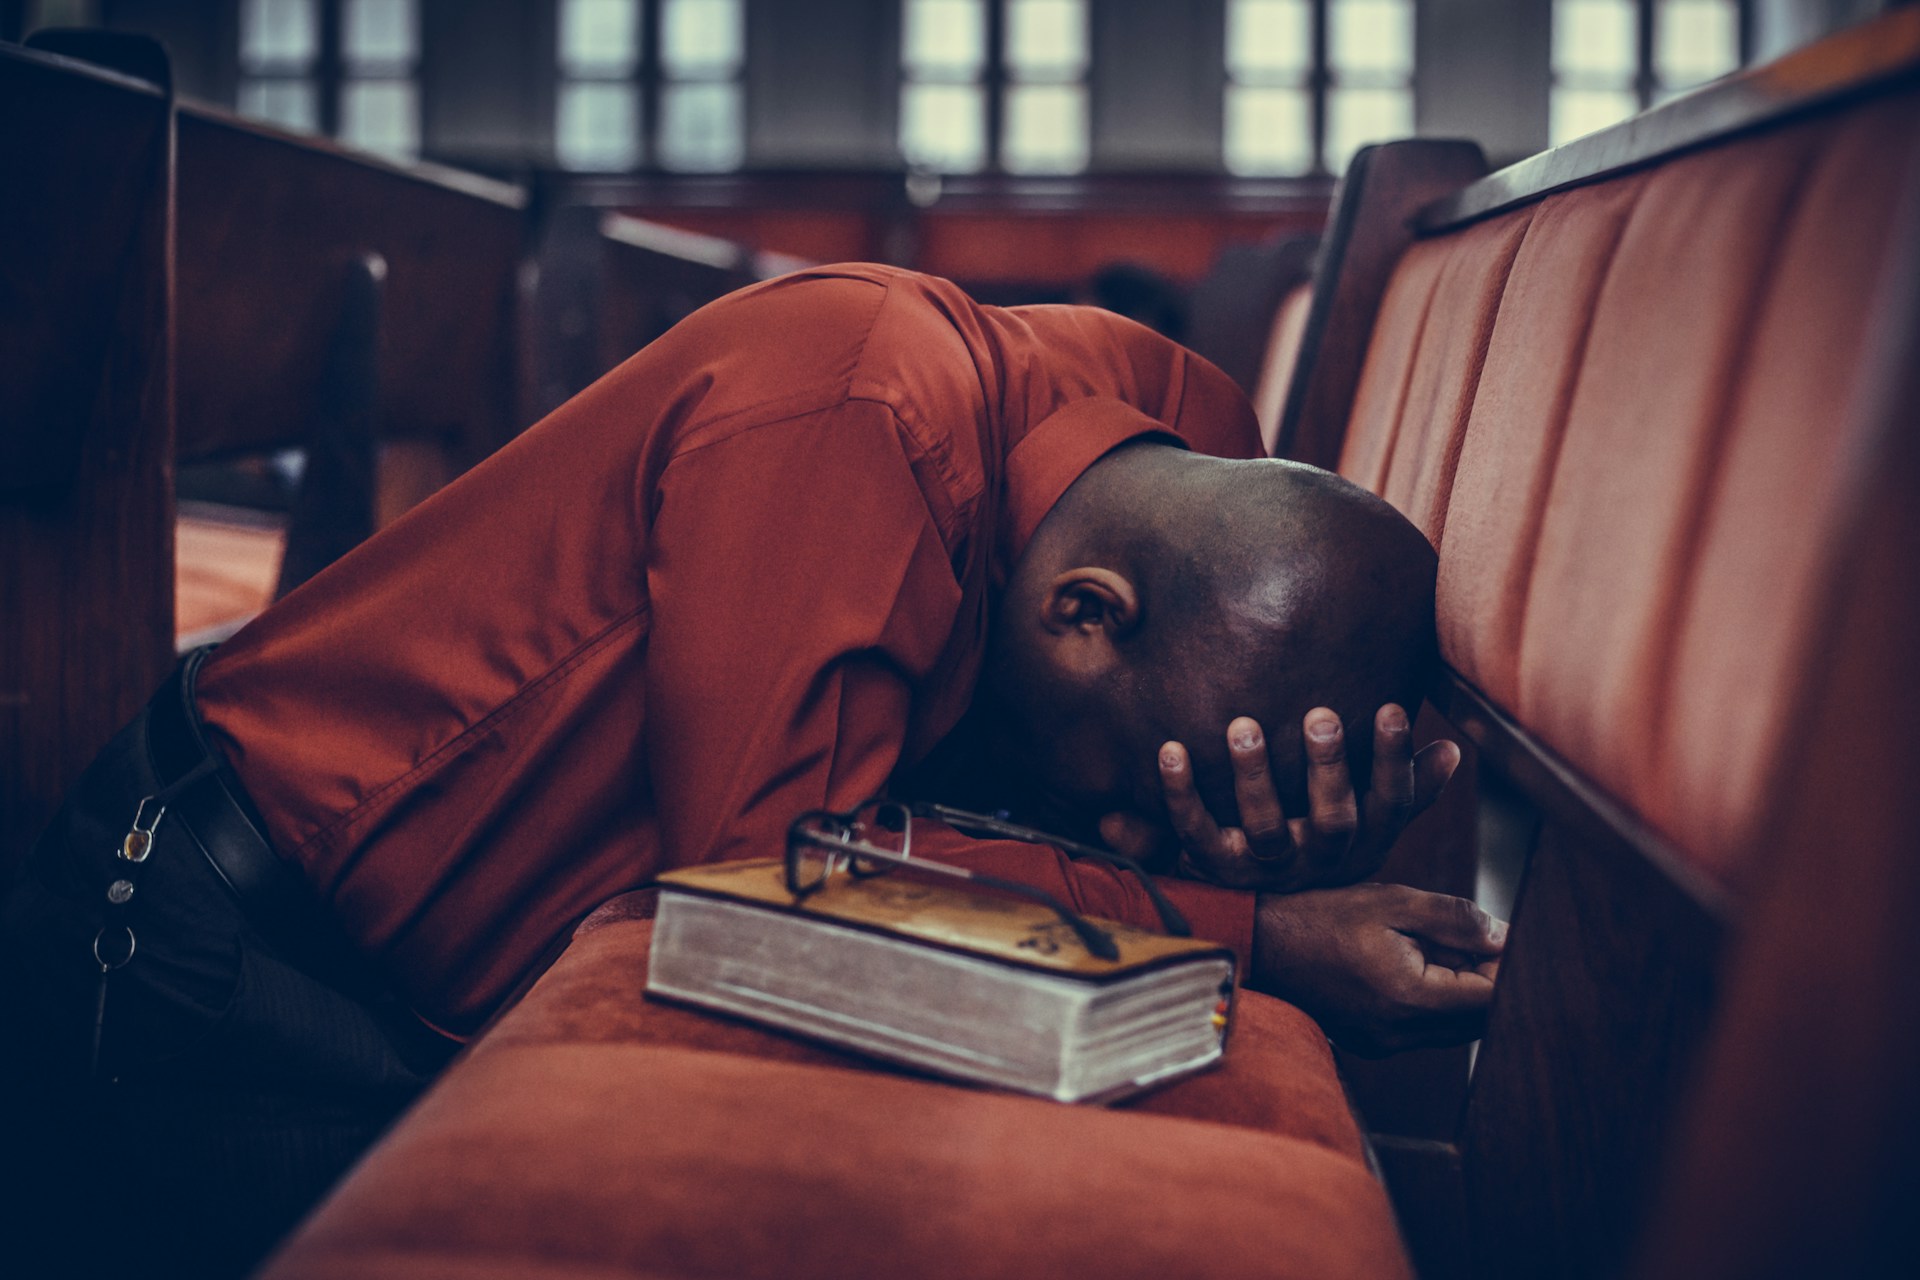 Un homme en prière dans une église, avec sa Bible posée à côté d elui - Photo de Samuel Martins sur https://unsplash.com/fr/photos/homme-en-haut-orange-a-cote-de-lunettes-sur-un-livre-brun-3U7HcqkIbb4